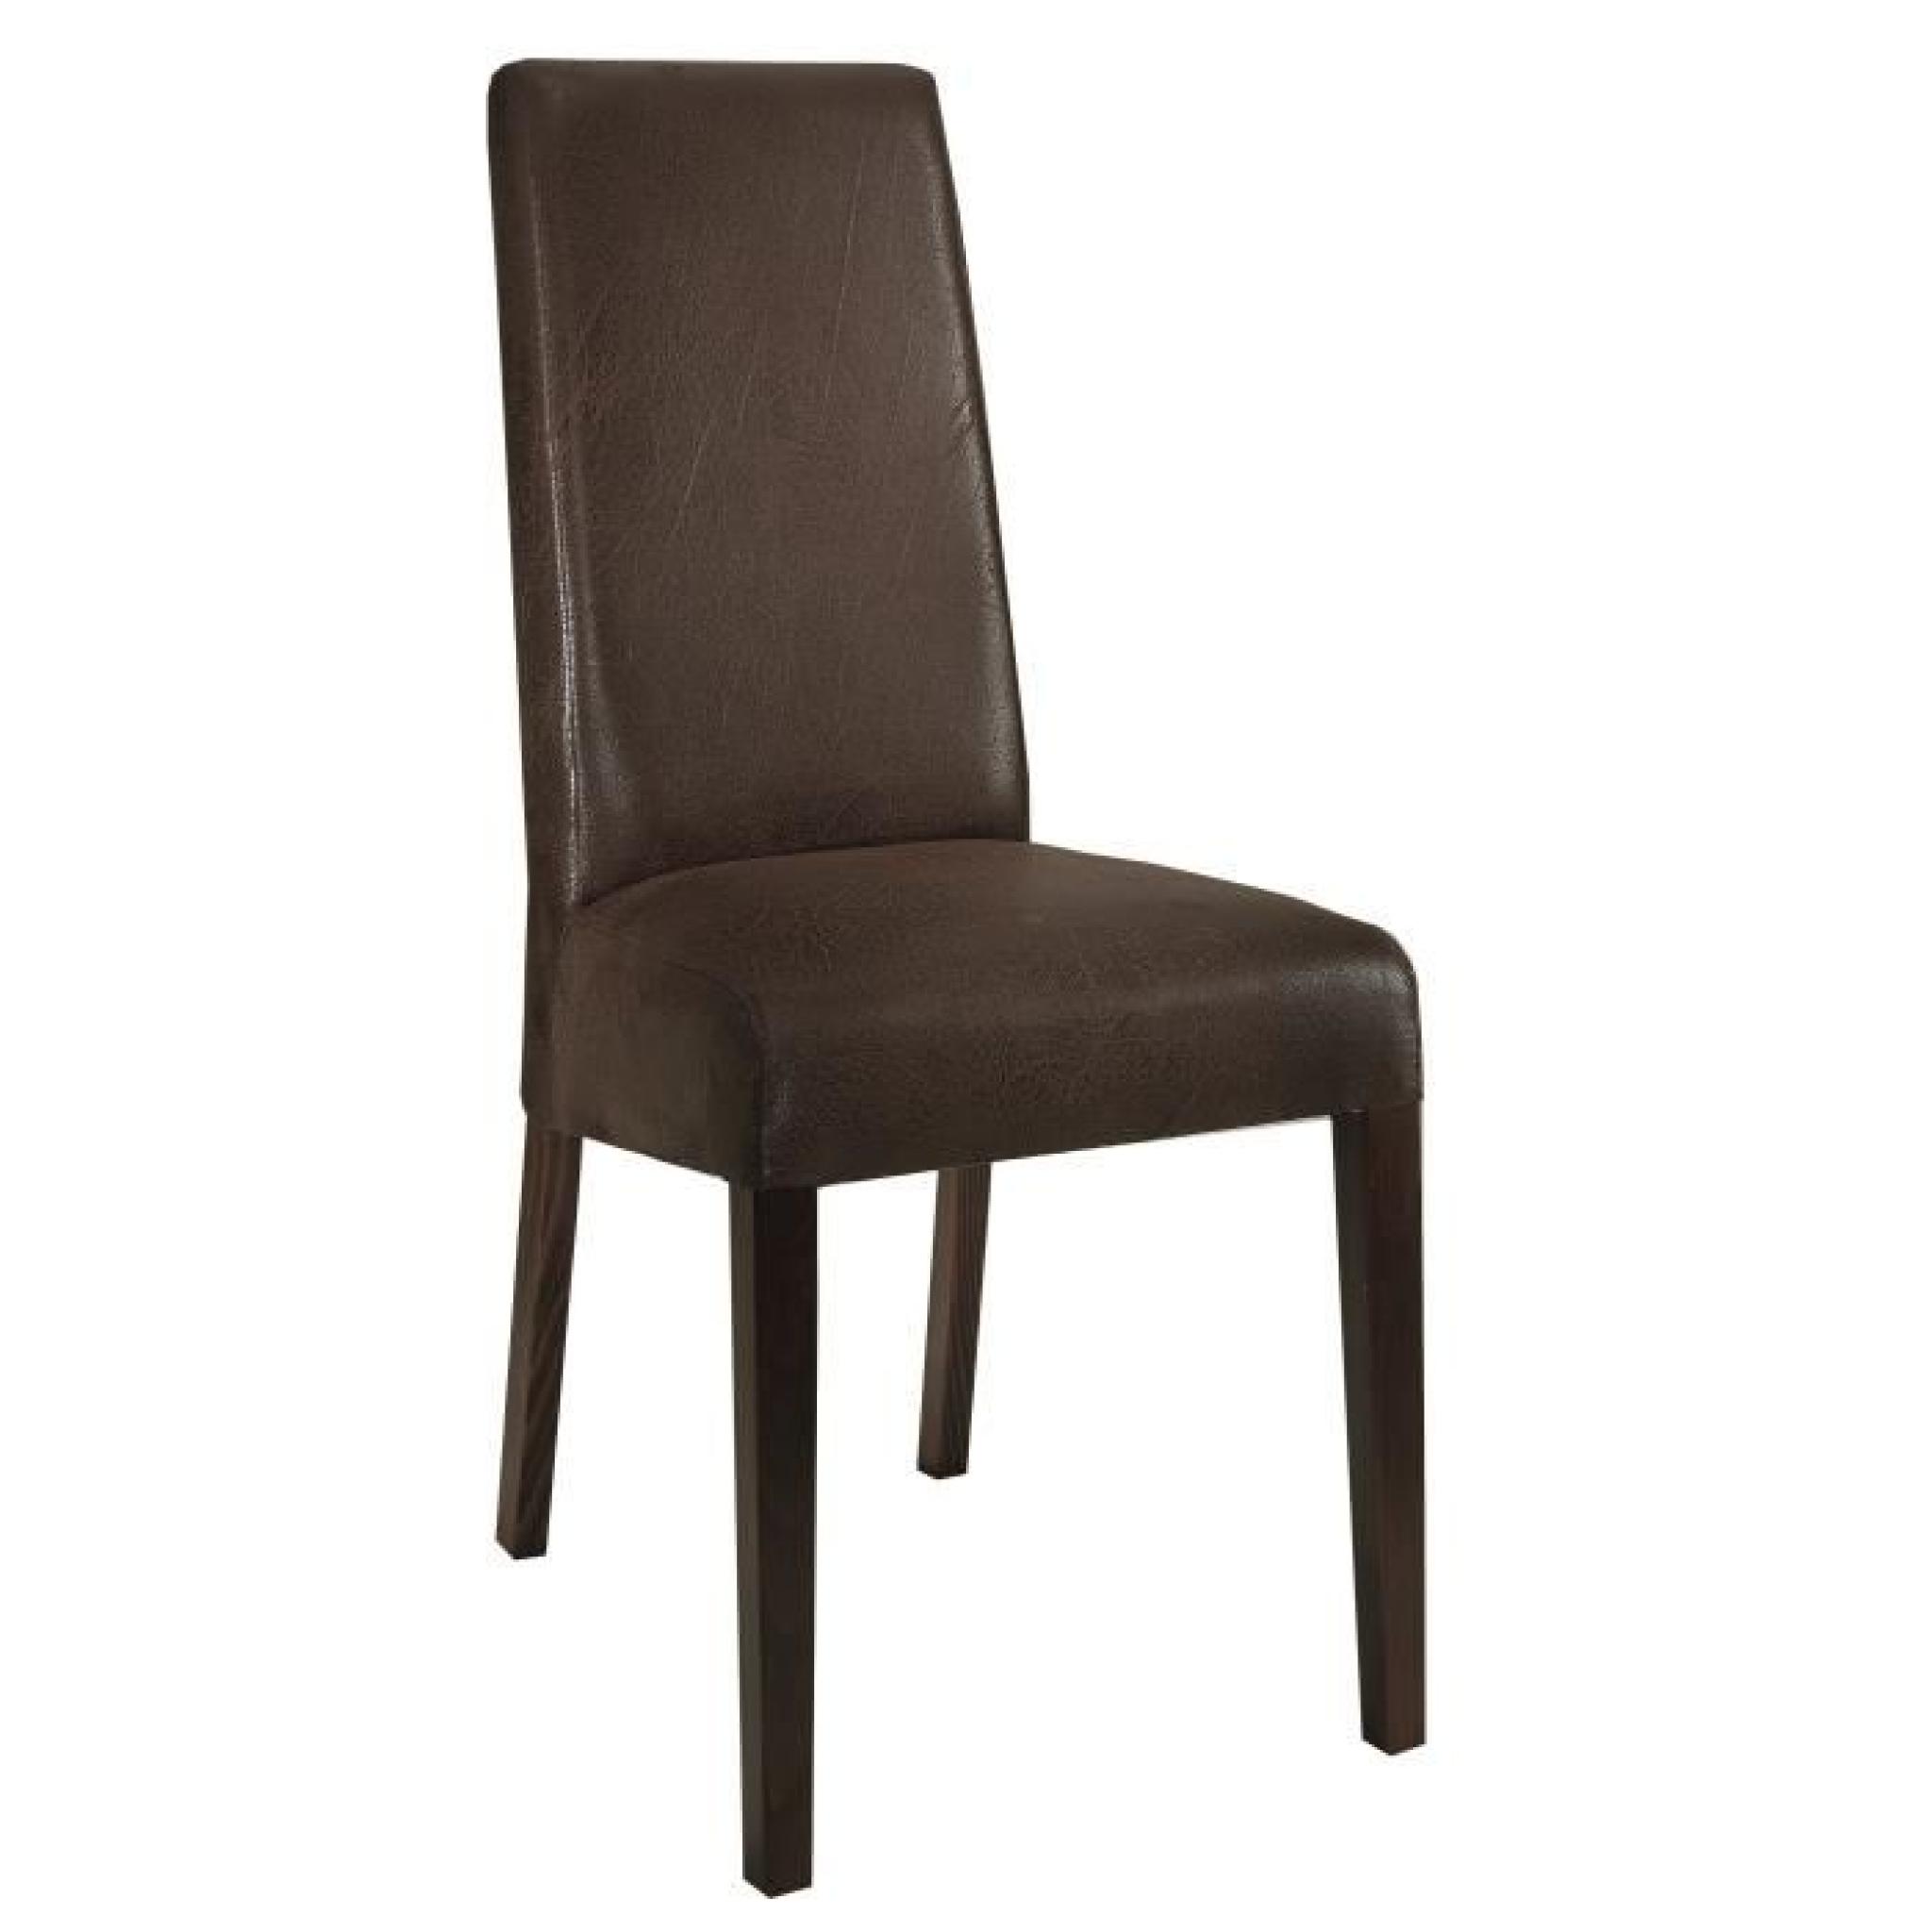 Table en bois et gris laqué 190 cm + 4 chaises en tissu brun foncé pas cher